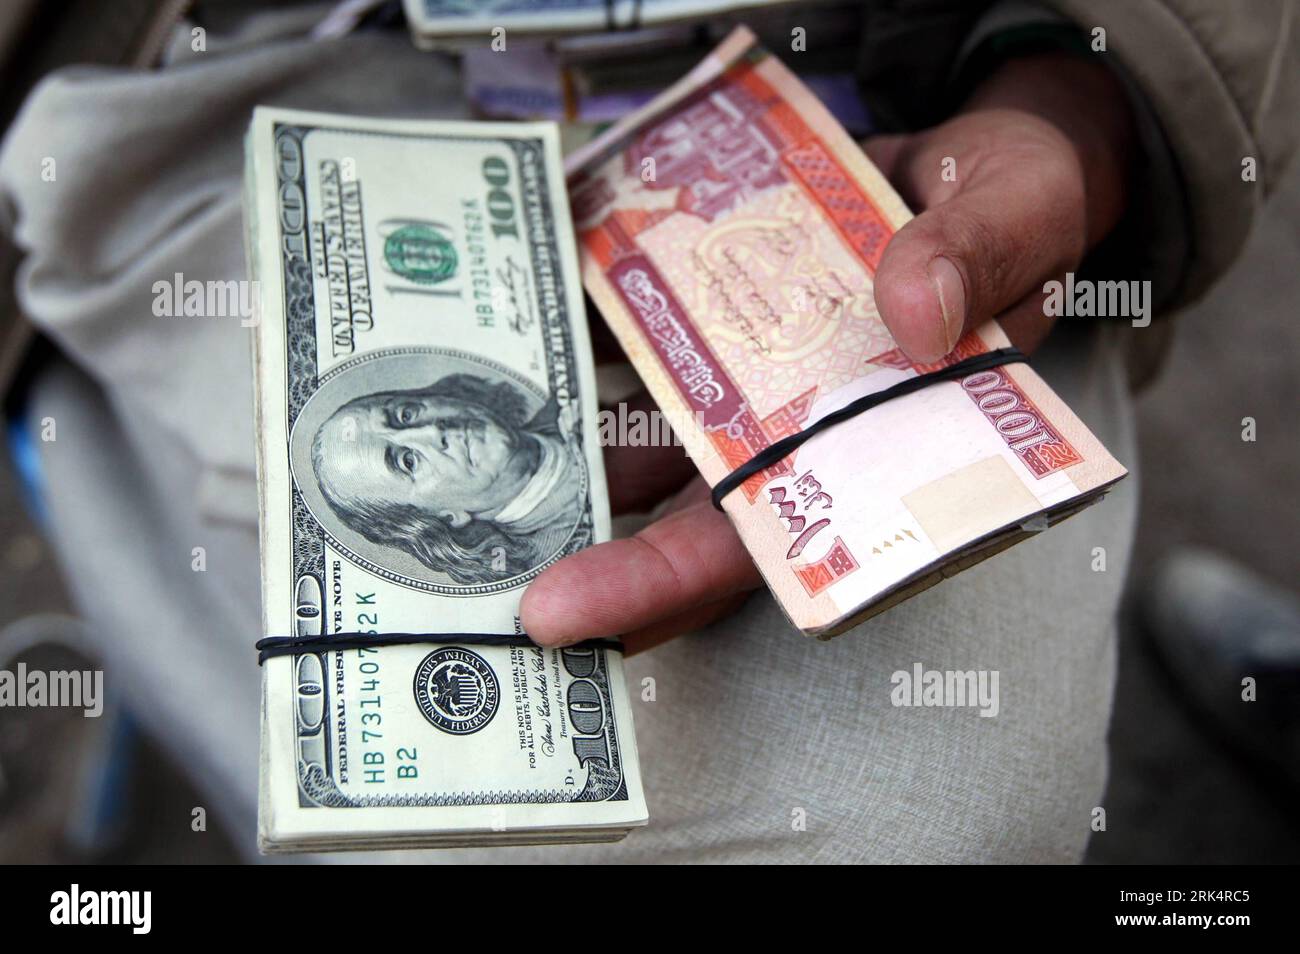 Bildnummer: 53661581 Datum: 12.12.2009 Copyright: imago/Xinhua (091212) -- KABUL, 12. Dezember 2009 (Xinhua) -- ein afghanischer Händler hält am 12. Dezember 2009 US-Dollar-Banknoten und afghanische Banknoten an einem Devisenmarkt in Kabul, der Hauptstadt Afghanistans. Vor kurzem fand ein Seminar statt, um zu erörtern, wie verhindert werden kann, dass US-Dollar illegal aus Afghanistan ausgezogen werden. (Xinhua/Zabi Tamanna) (lr) AFGHANISTAN-KABUL-USA DOLLAR-ILLEGAL TRANSFER-CURB PUBLICATIONxNOTxINxCHN Geldwechsel Geld Währung wechselt Wechsel kbdig xng 2009 quer Premiumd o0 Schein Geldschein Körperteile Hand o Stockfoto